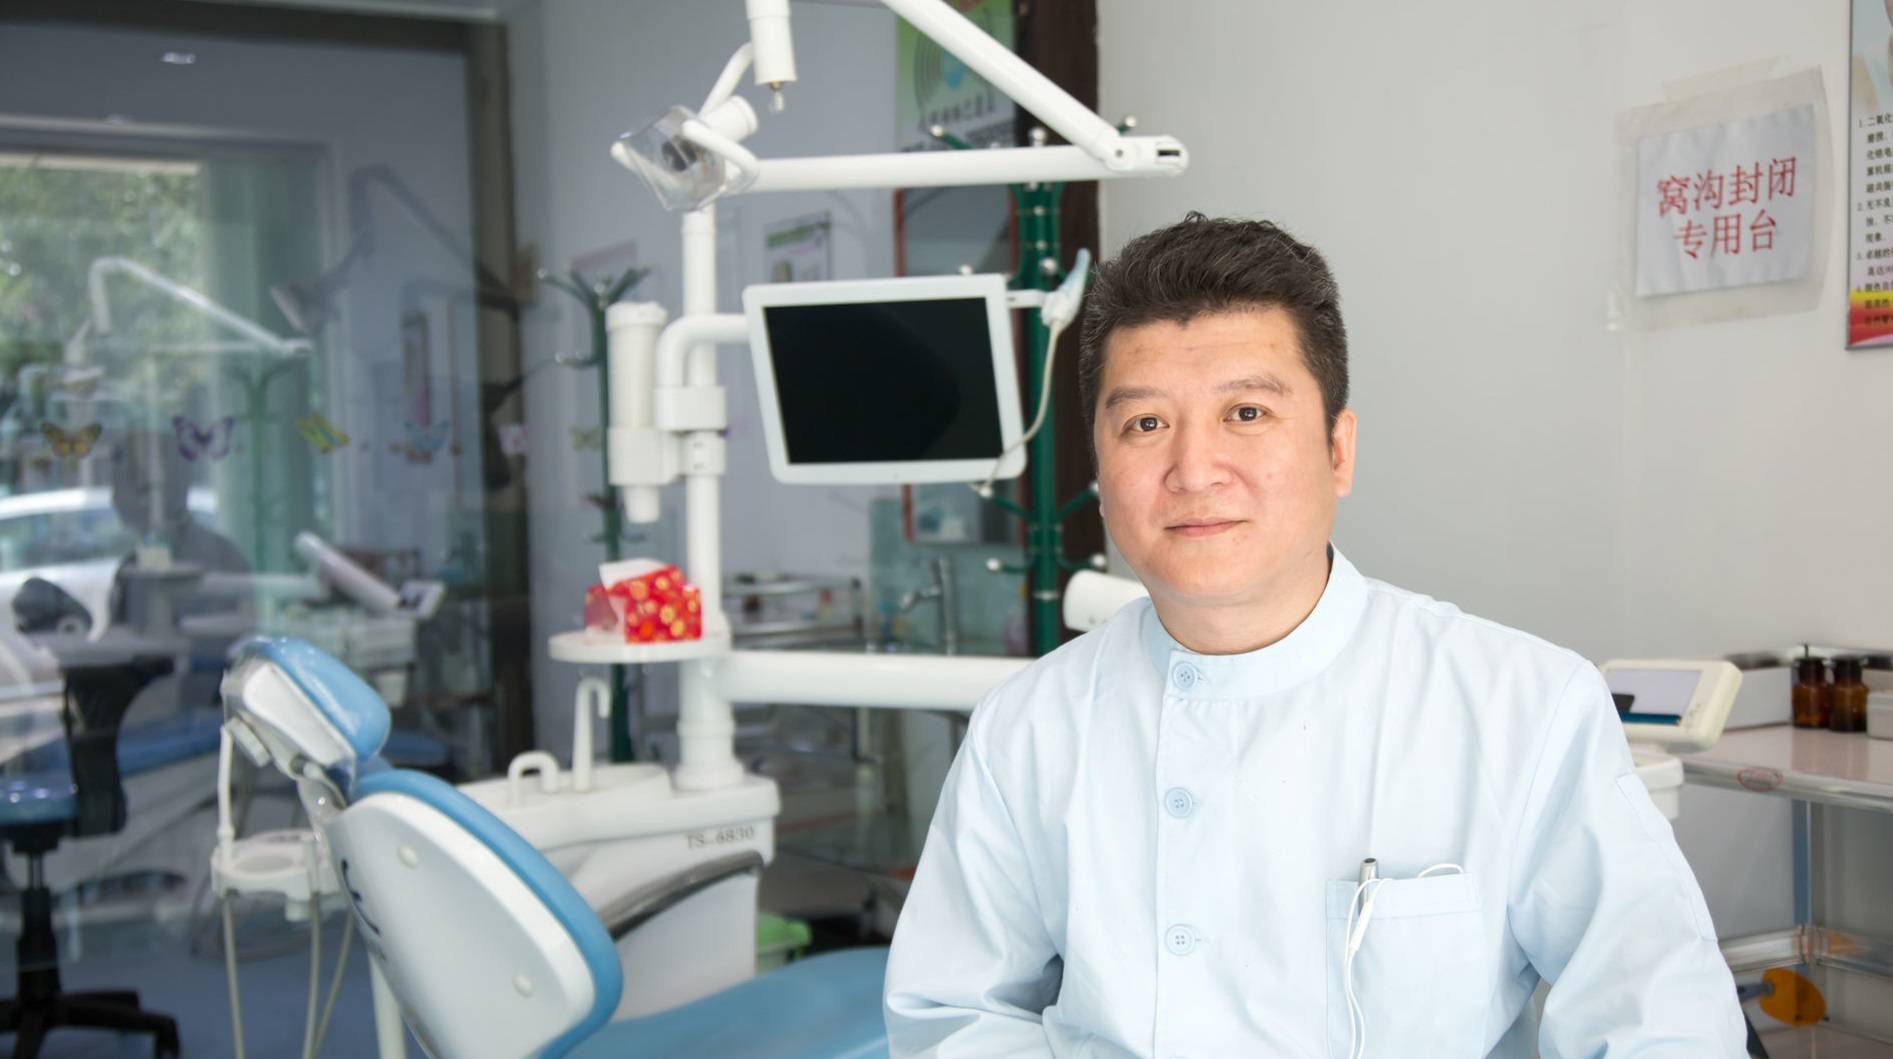 Лечение зубов в китае в 2021 году: лучшие клиники, стоимость